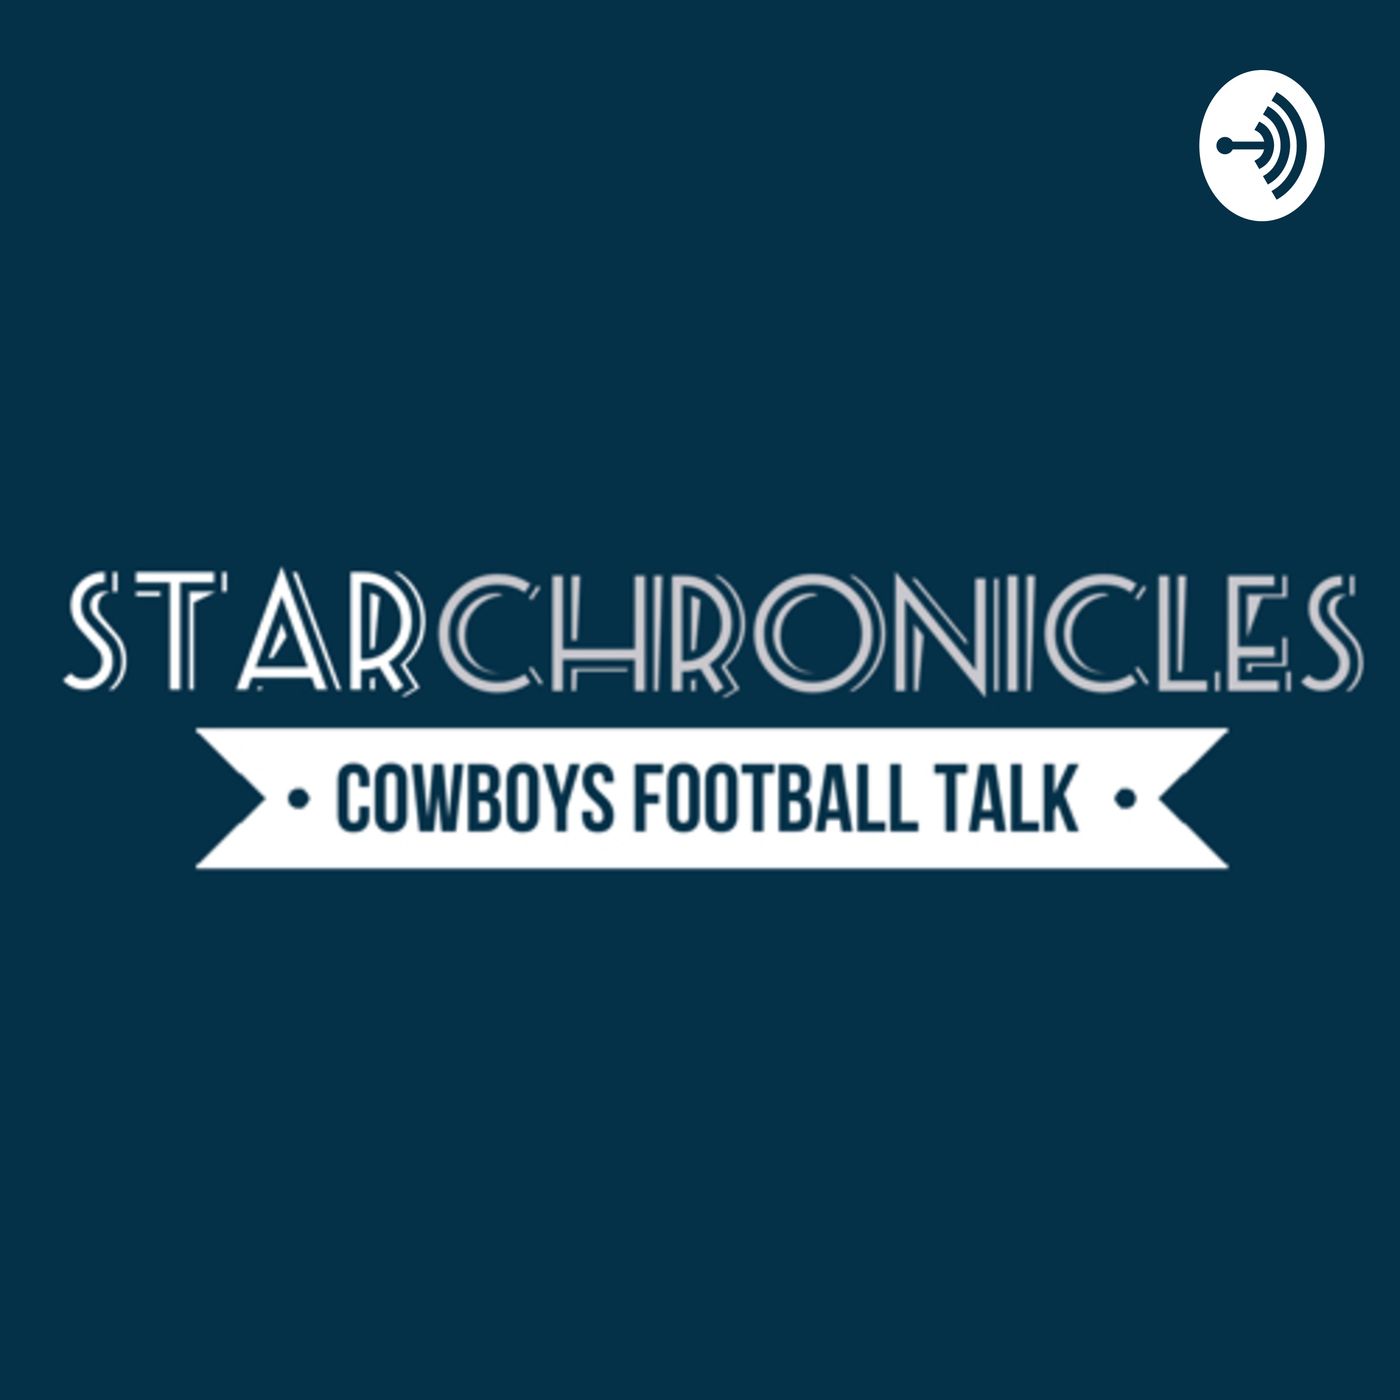 Star Chronicles Cowboys Football Talk